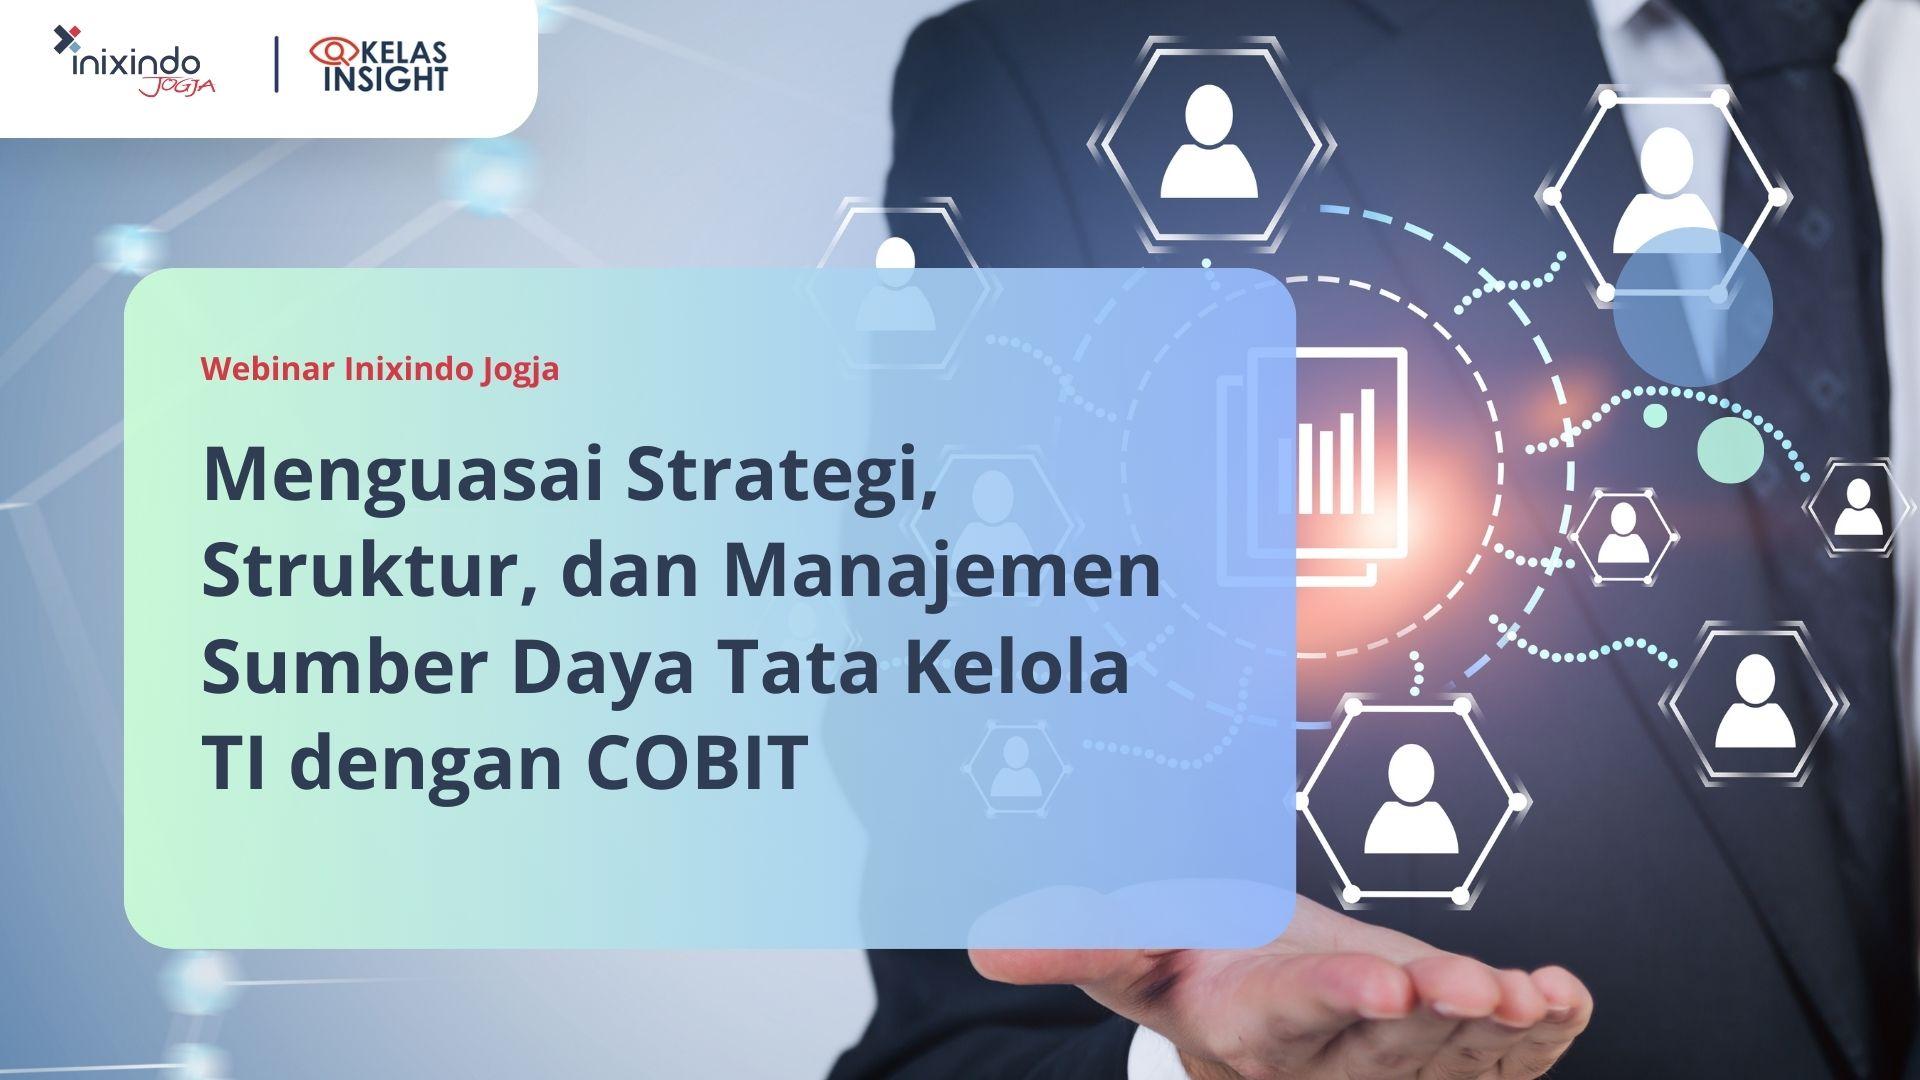 Menguasai Strategi, Struktur, dan Manajemen Sumber Daya Tata Kelola TI dengan COBIT 7